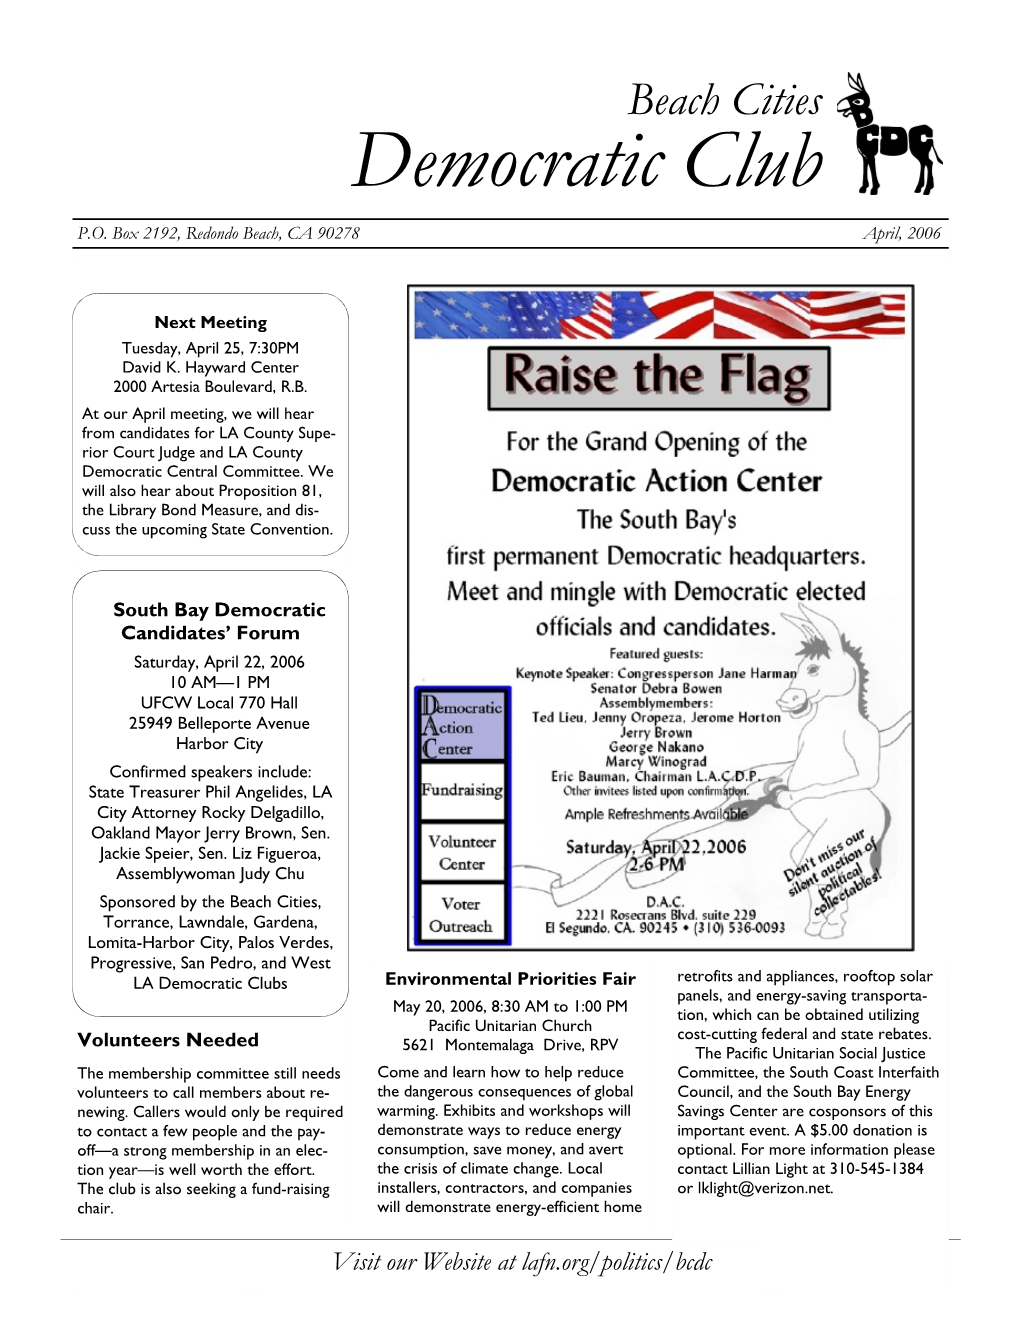 Democratic Club P.O